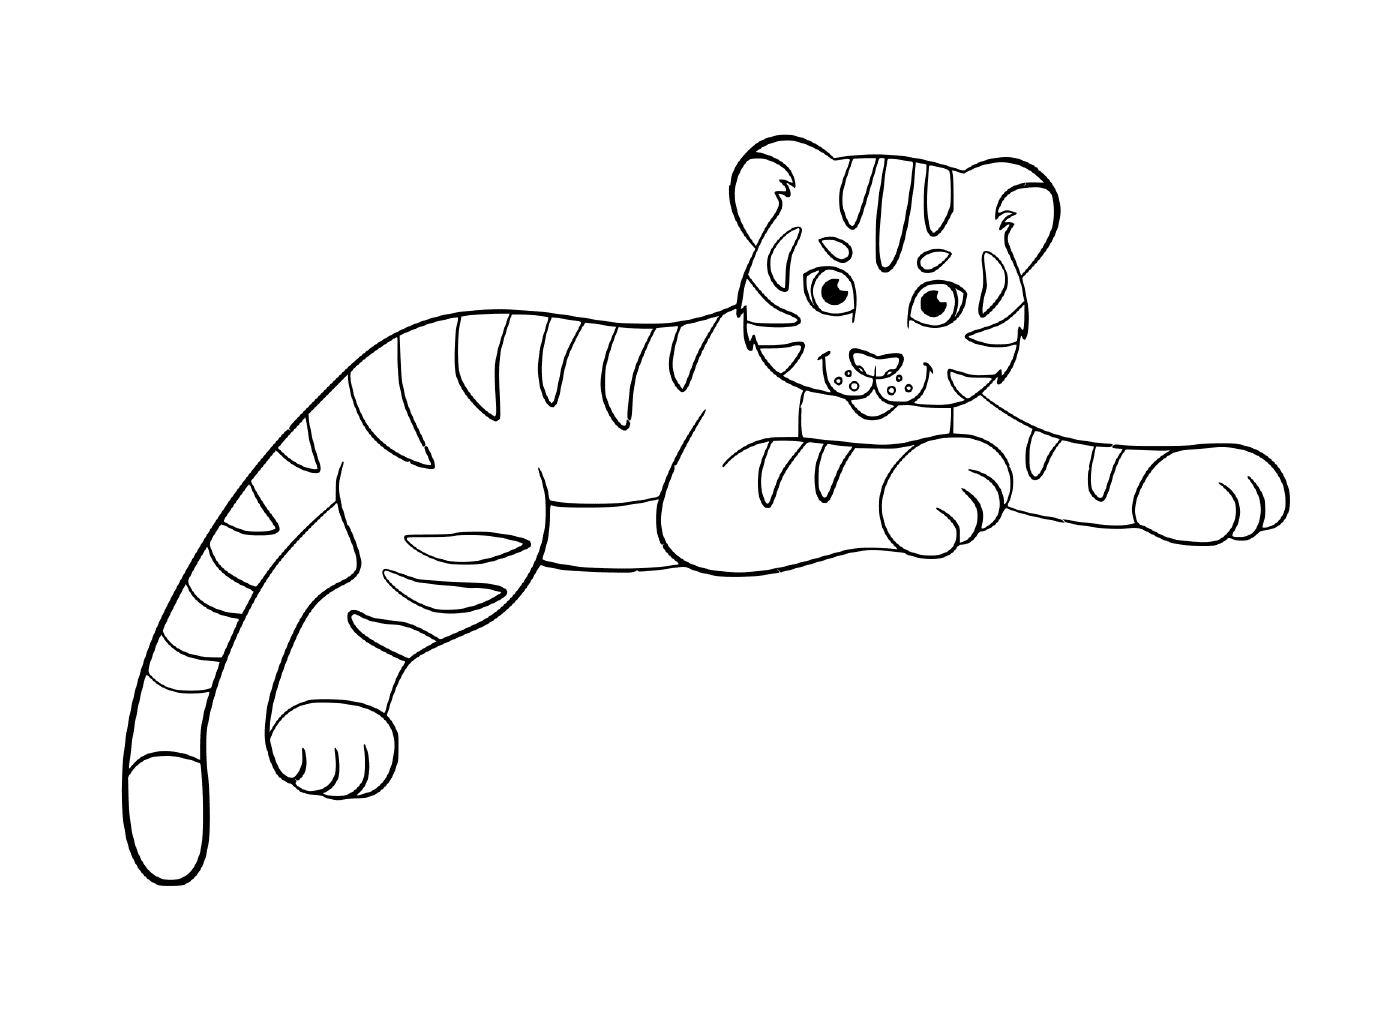  एक छोटा बच्चा बाघ का बच्चा 